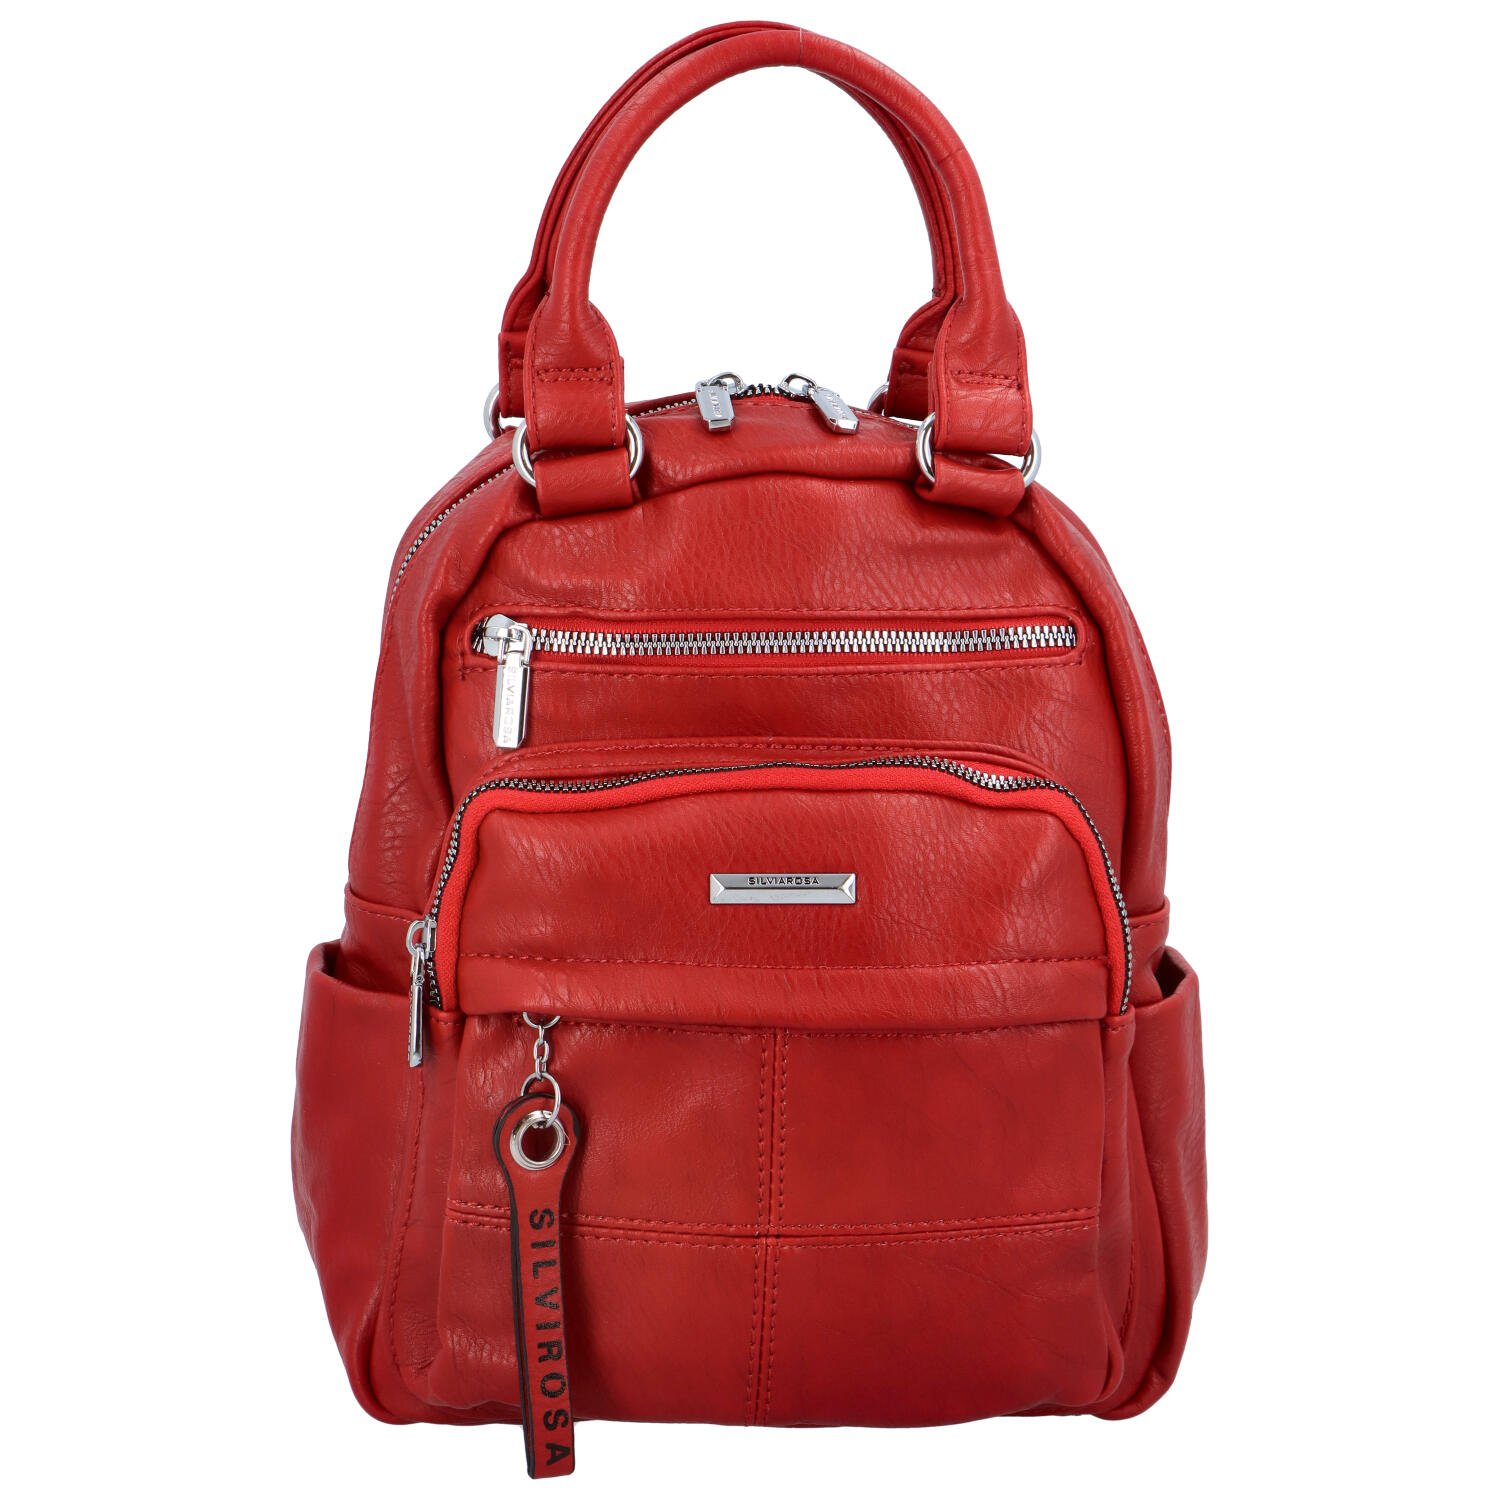 Originální dámský batůžek kabelka červený - Silvia Rosa Begamile